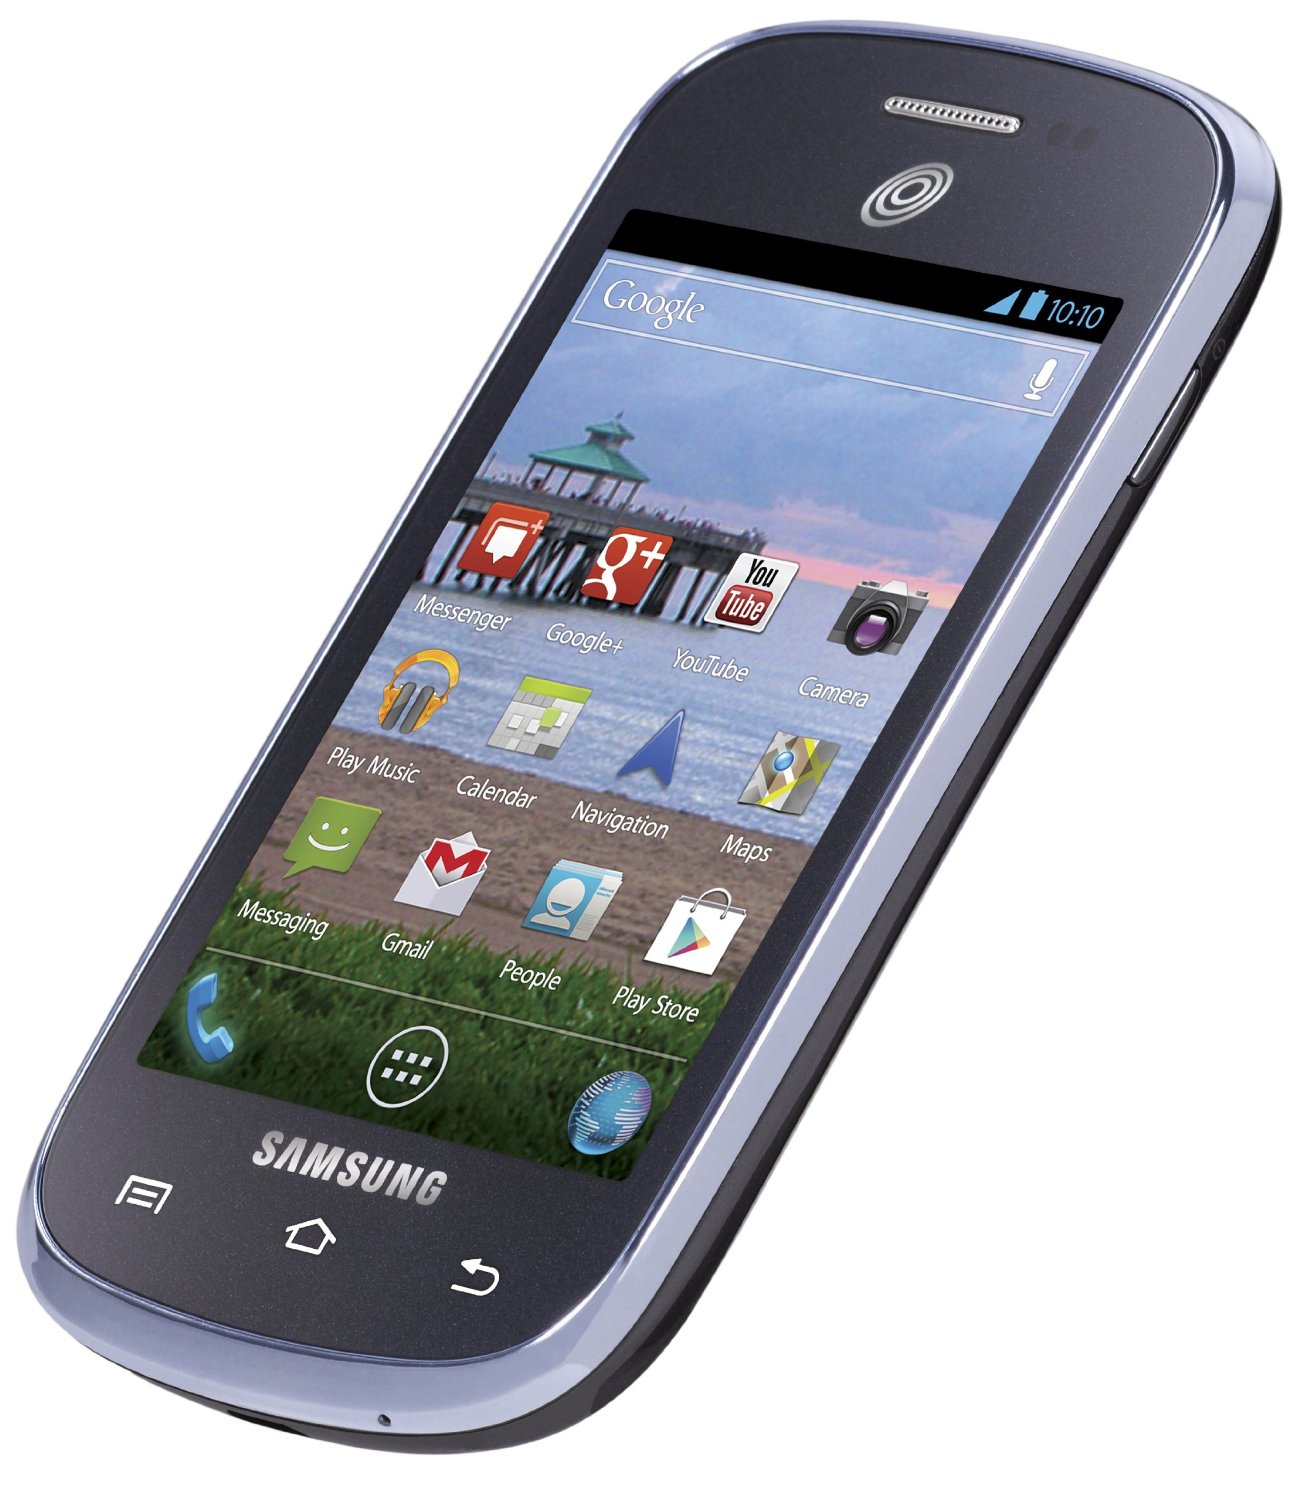 Samsung Galaxy Centura ringtones free download.